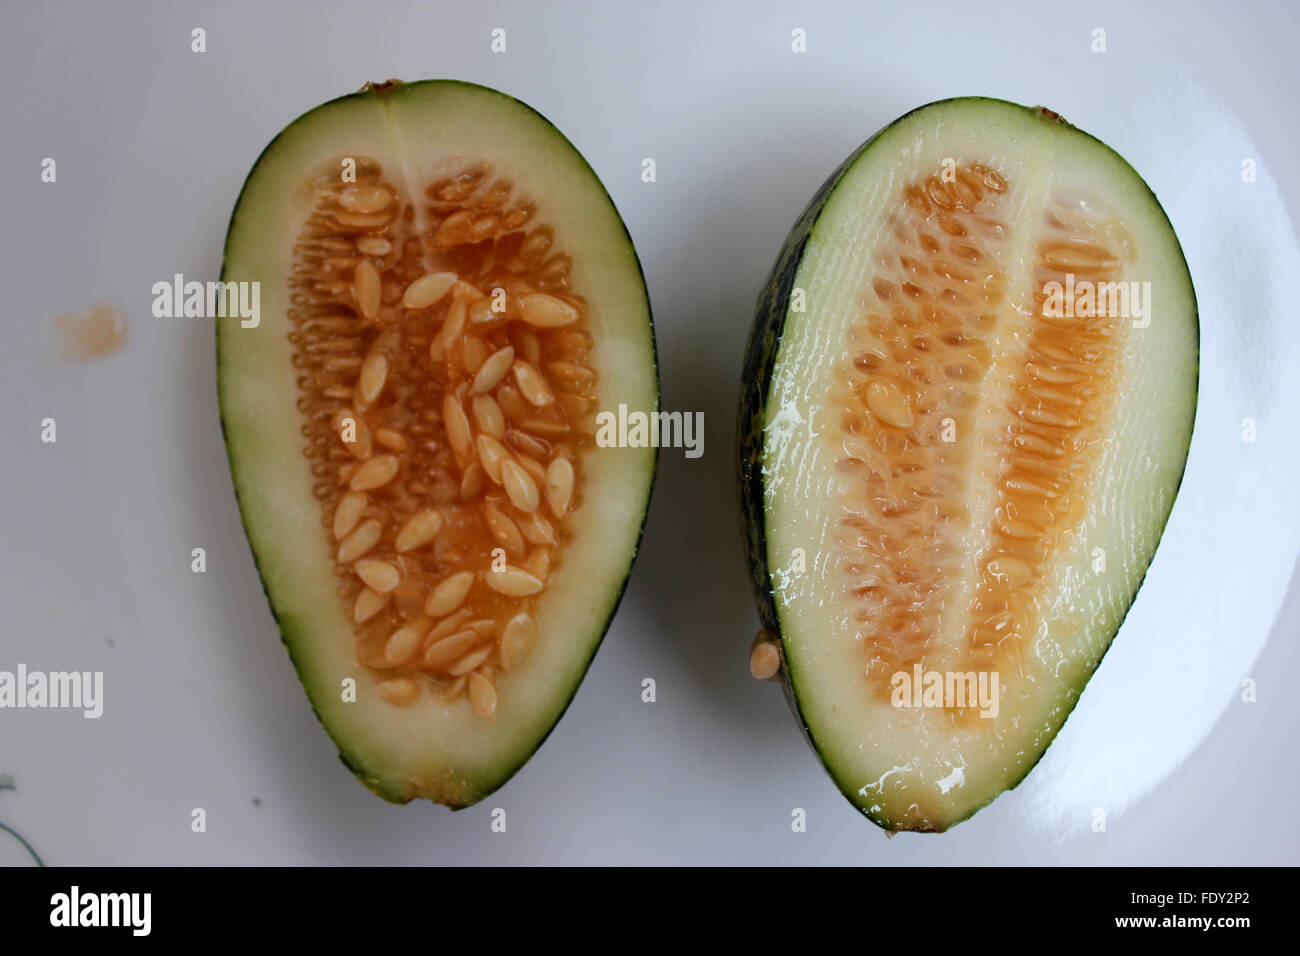 Wild Melon, Cucumis Melo Var Agrestis, Obst Abschnitt, Bari Kachri, ovale Frucht, grüne Haut, dunkle grüne Flecken, blasse grüne Fleisch Stockfoto